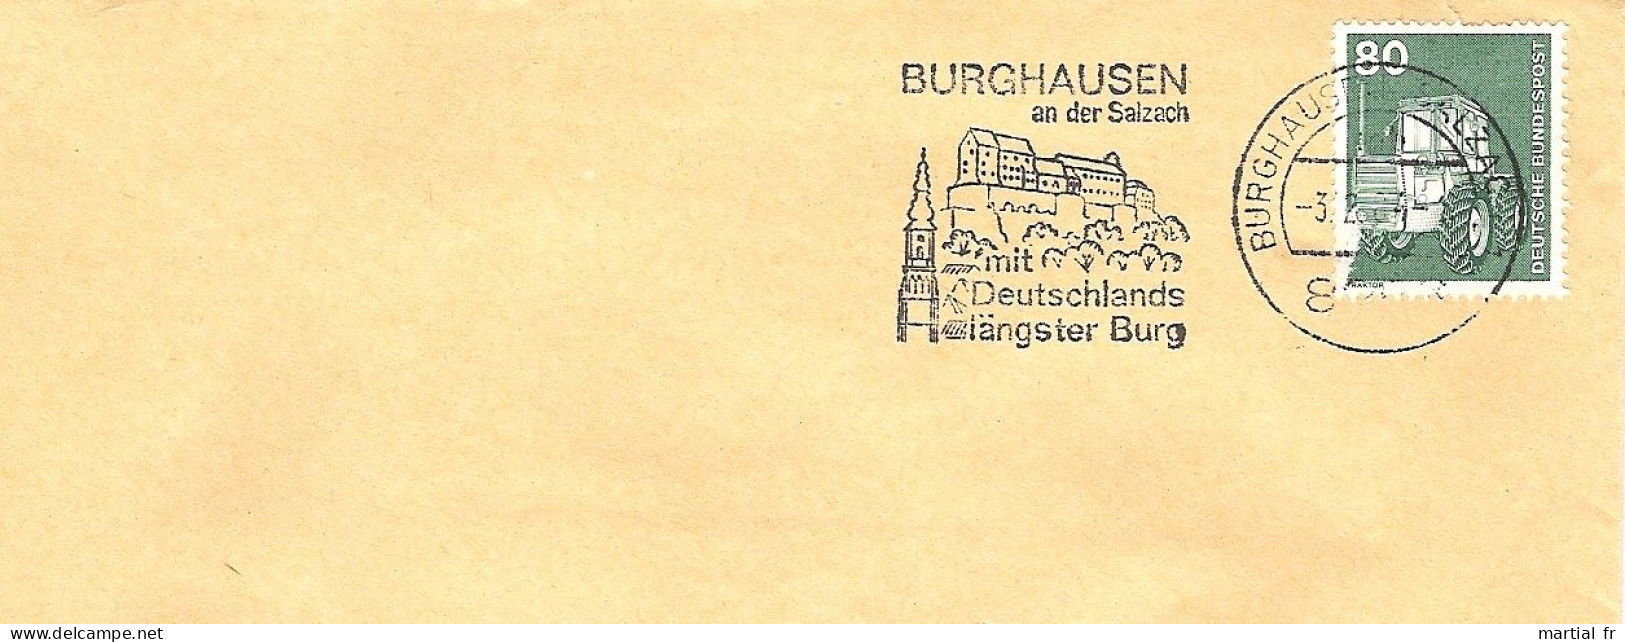 ALLEMAGNE DEUTSCHLAND GERMANY ARCHITECTURE CHATEAU FORT BURG CASTLE SCHLOSS FORTIFICATION Burghausen 8263 SALZACH - Schlösser U. Burgen